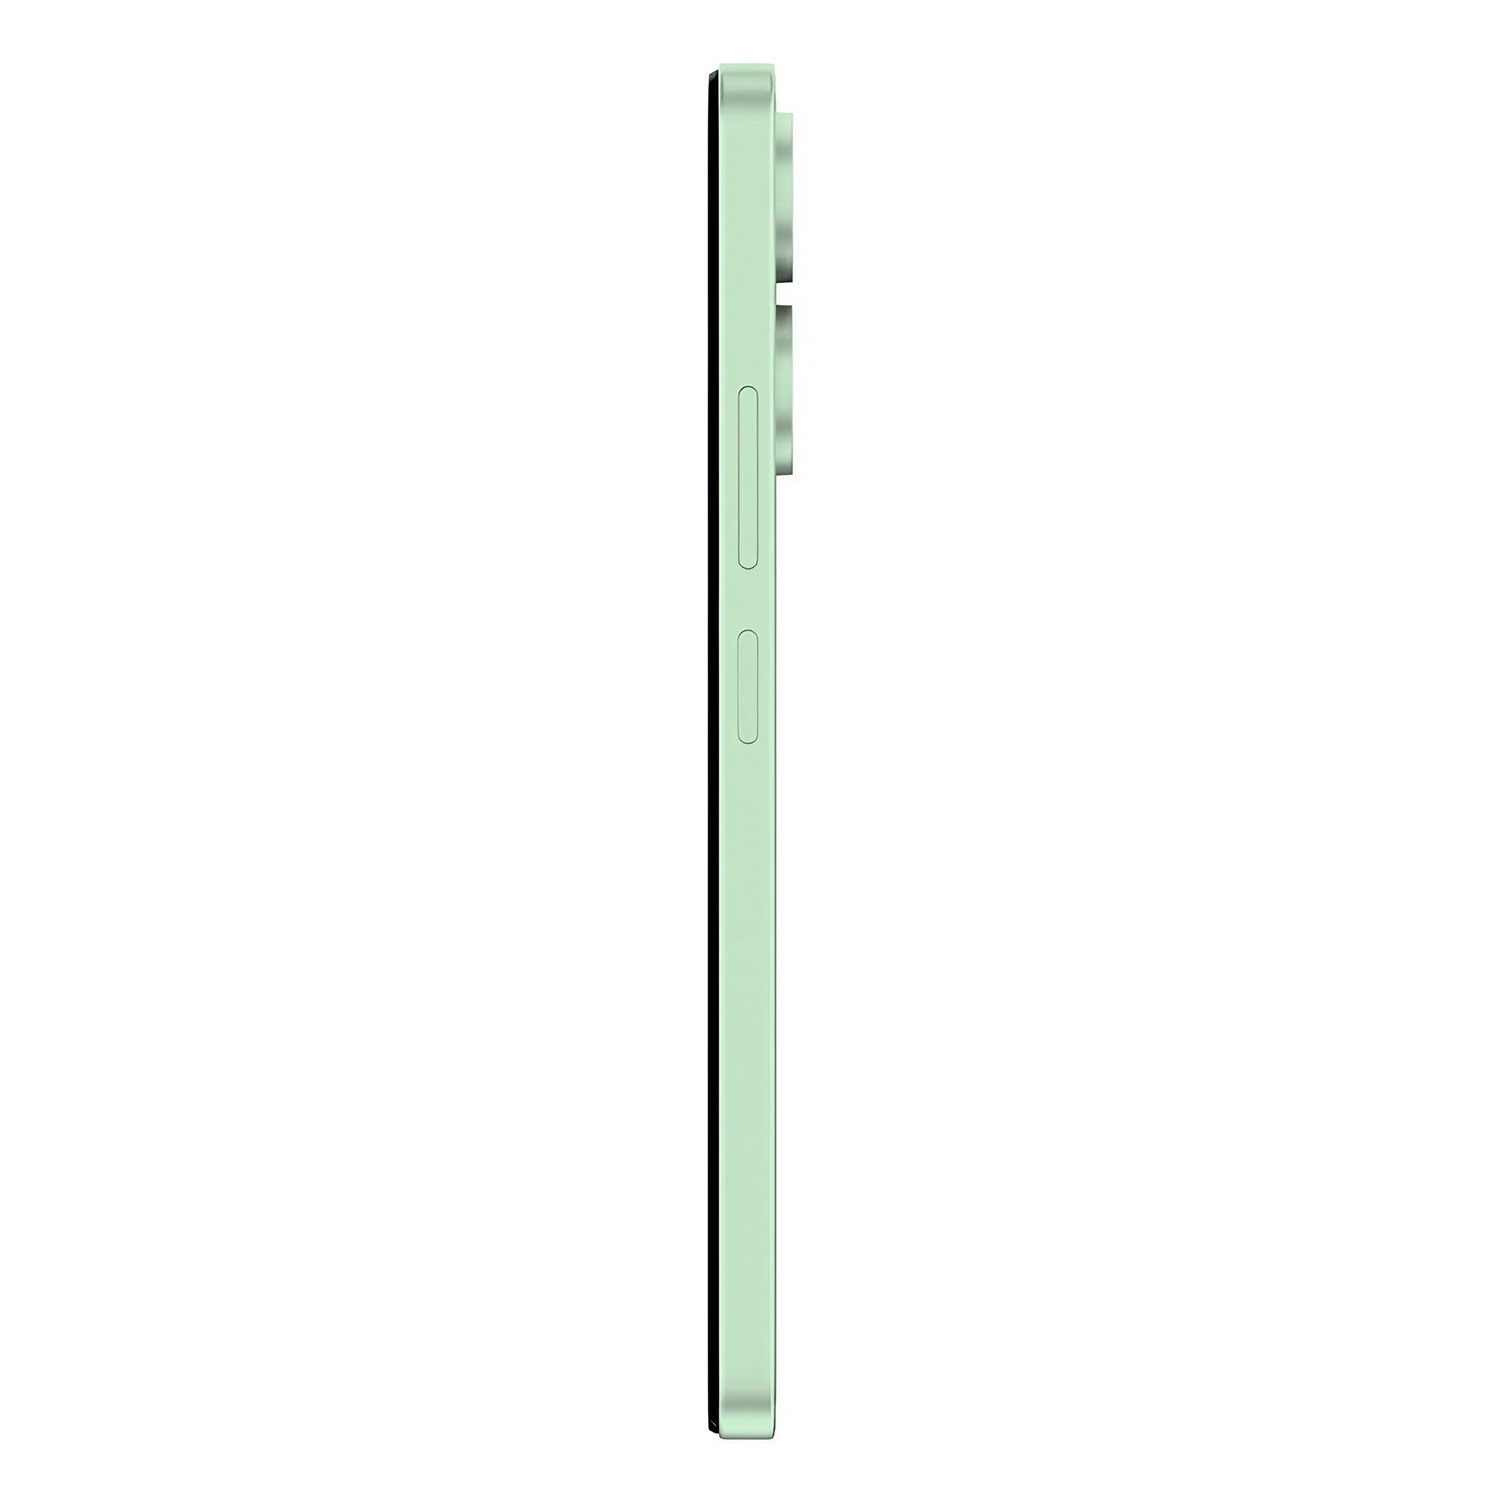 Smartphone Xiaomi Poco C65 128GB 4GB RAM Dual SIM Tela 6.74" India - Verde